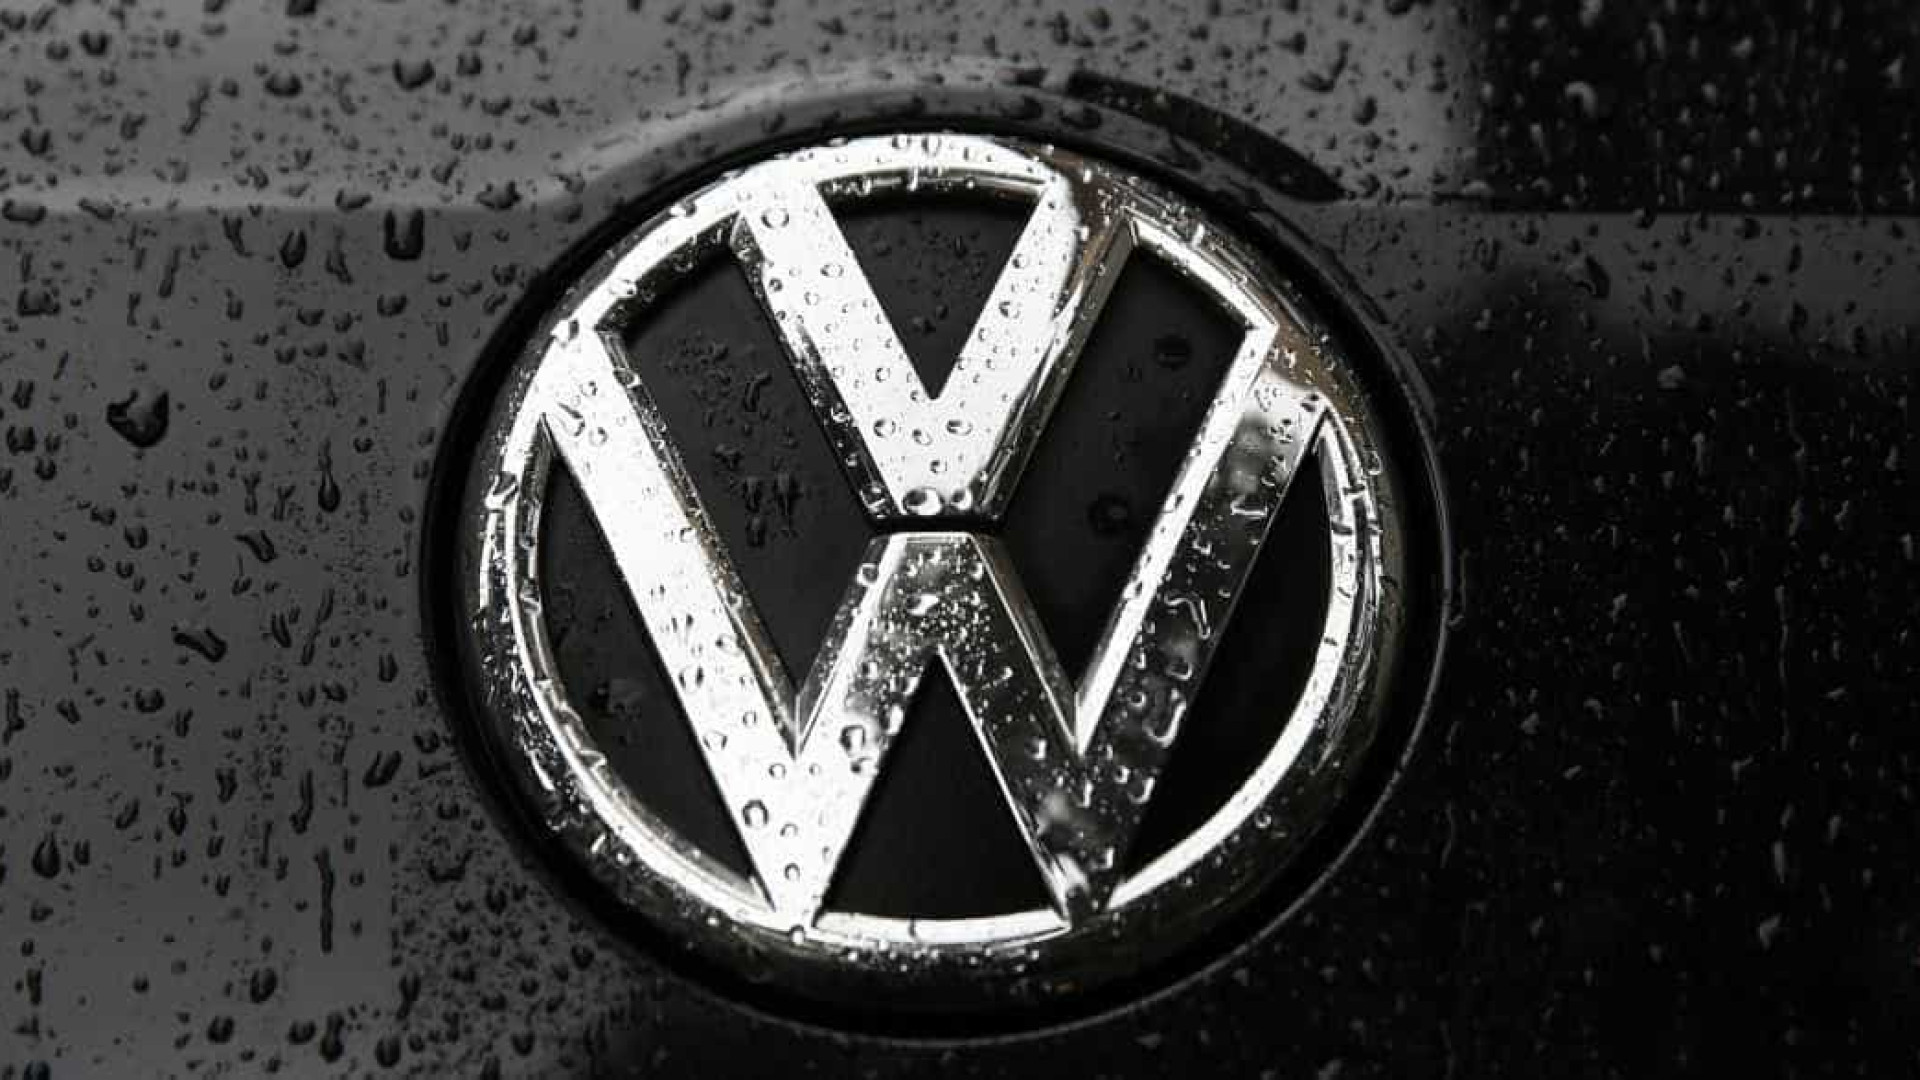 Volkswagen promete solução para eliminar manipulação de emissões